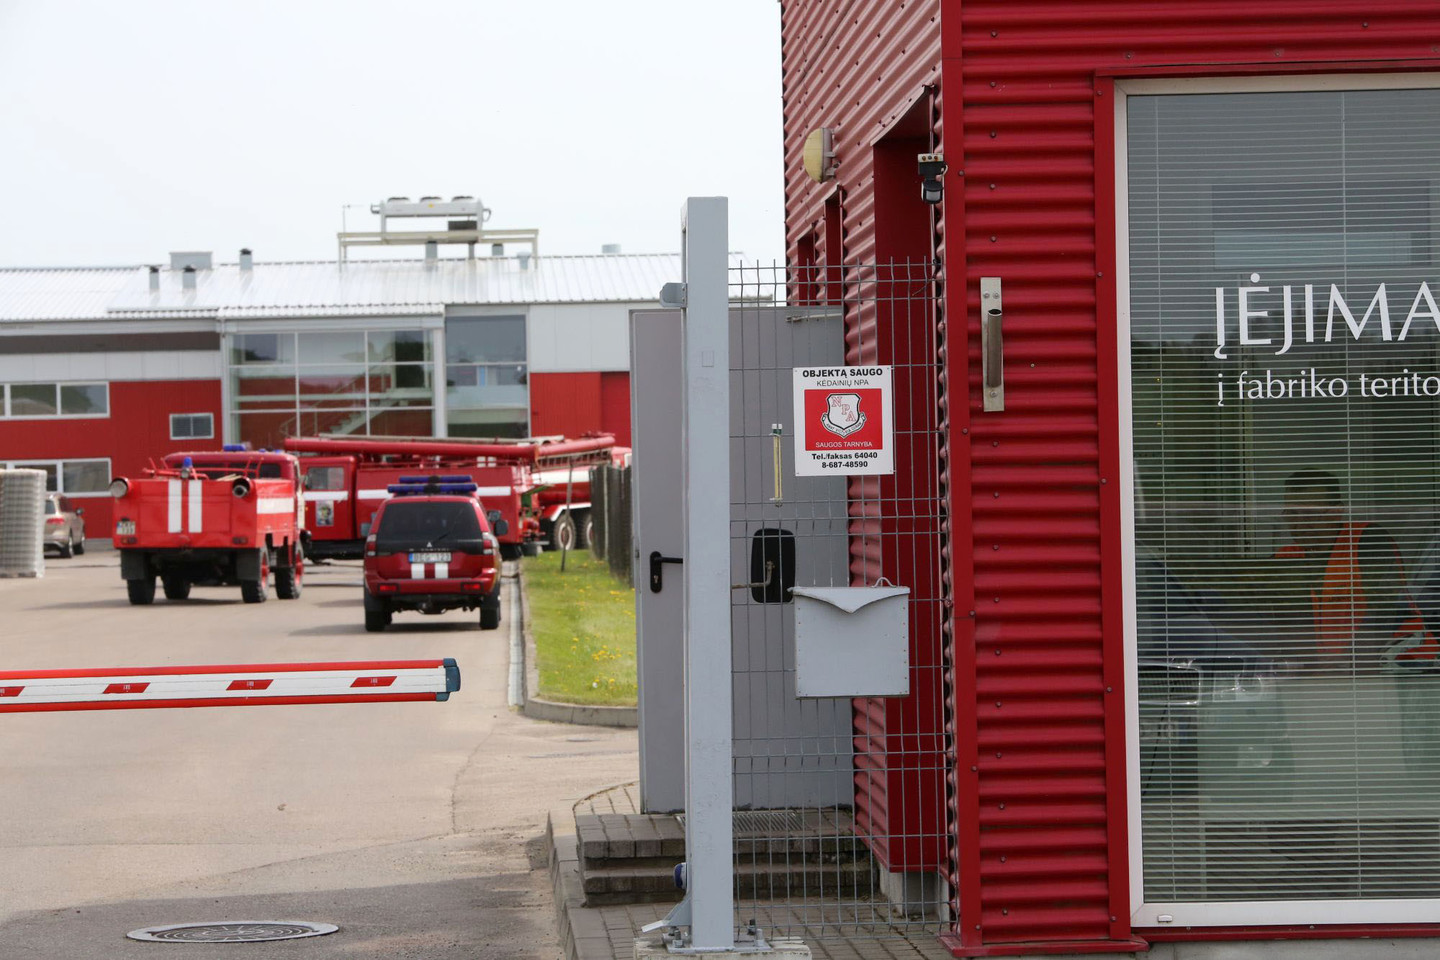 Release statement trade Liepsnos apėmė Kėdainių konservų fabriką, skubiai evakuota 100 darbuotojų